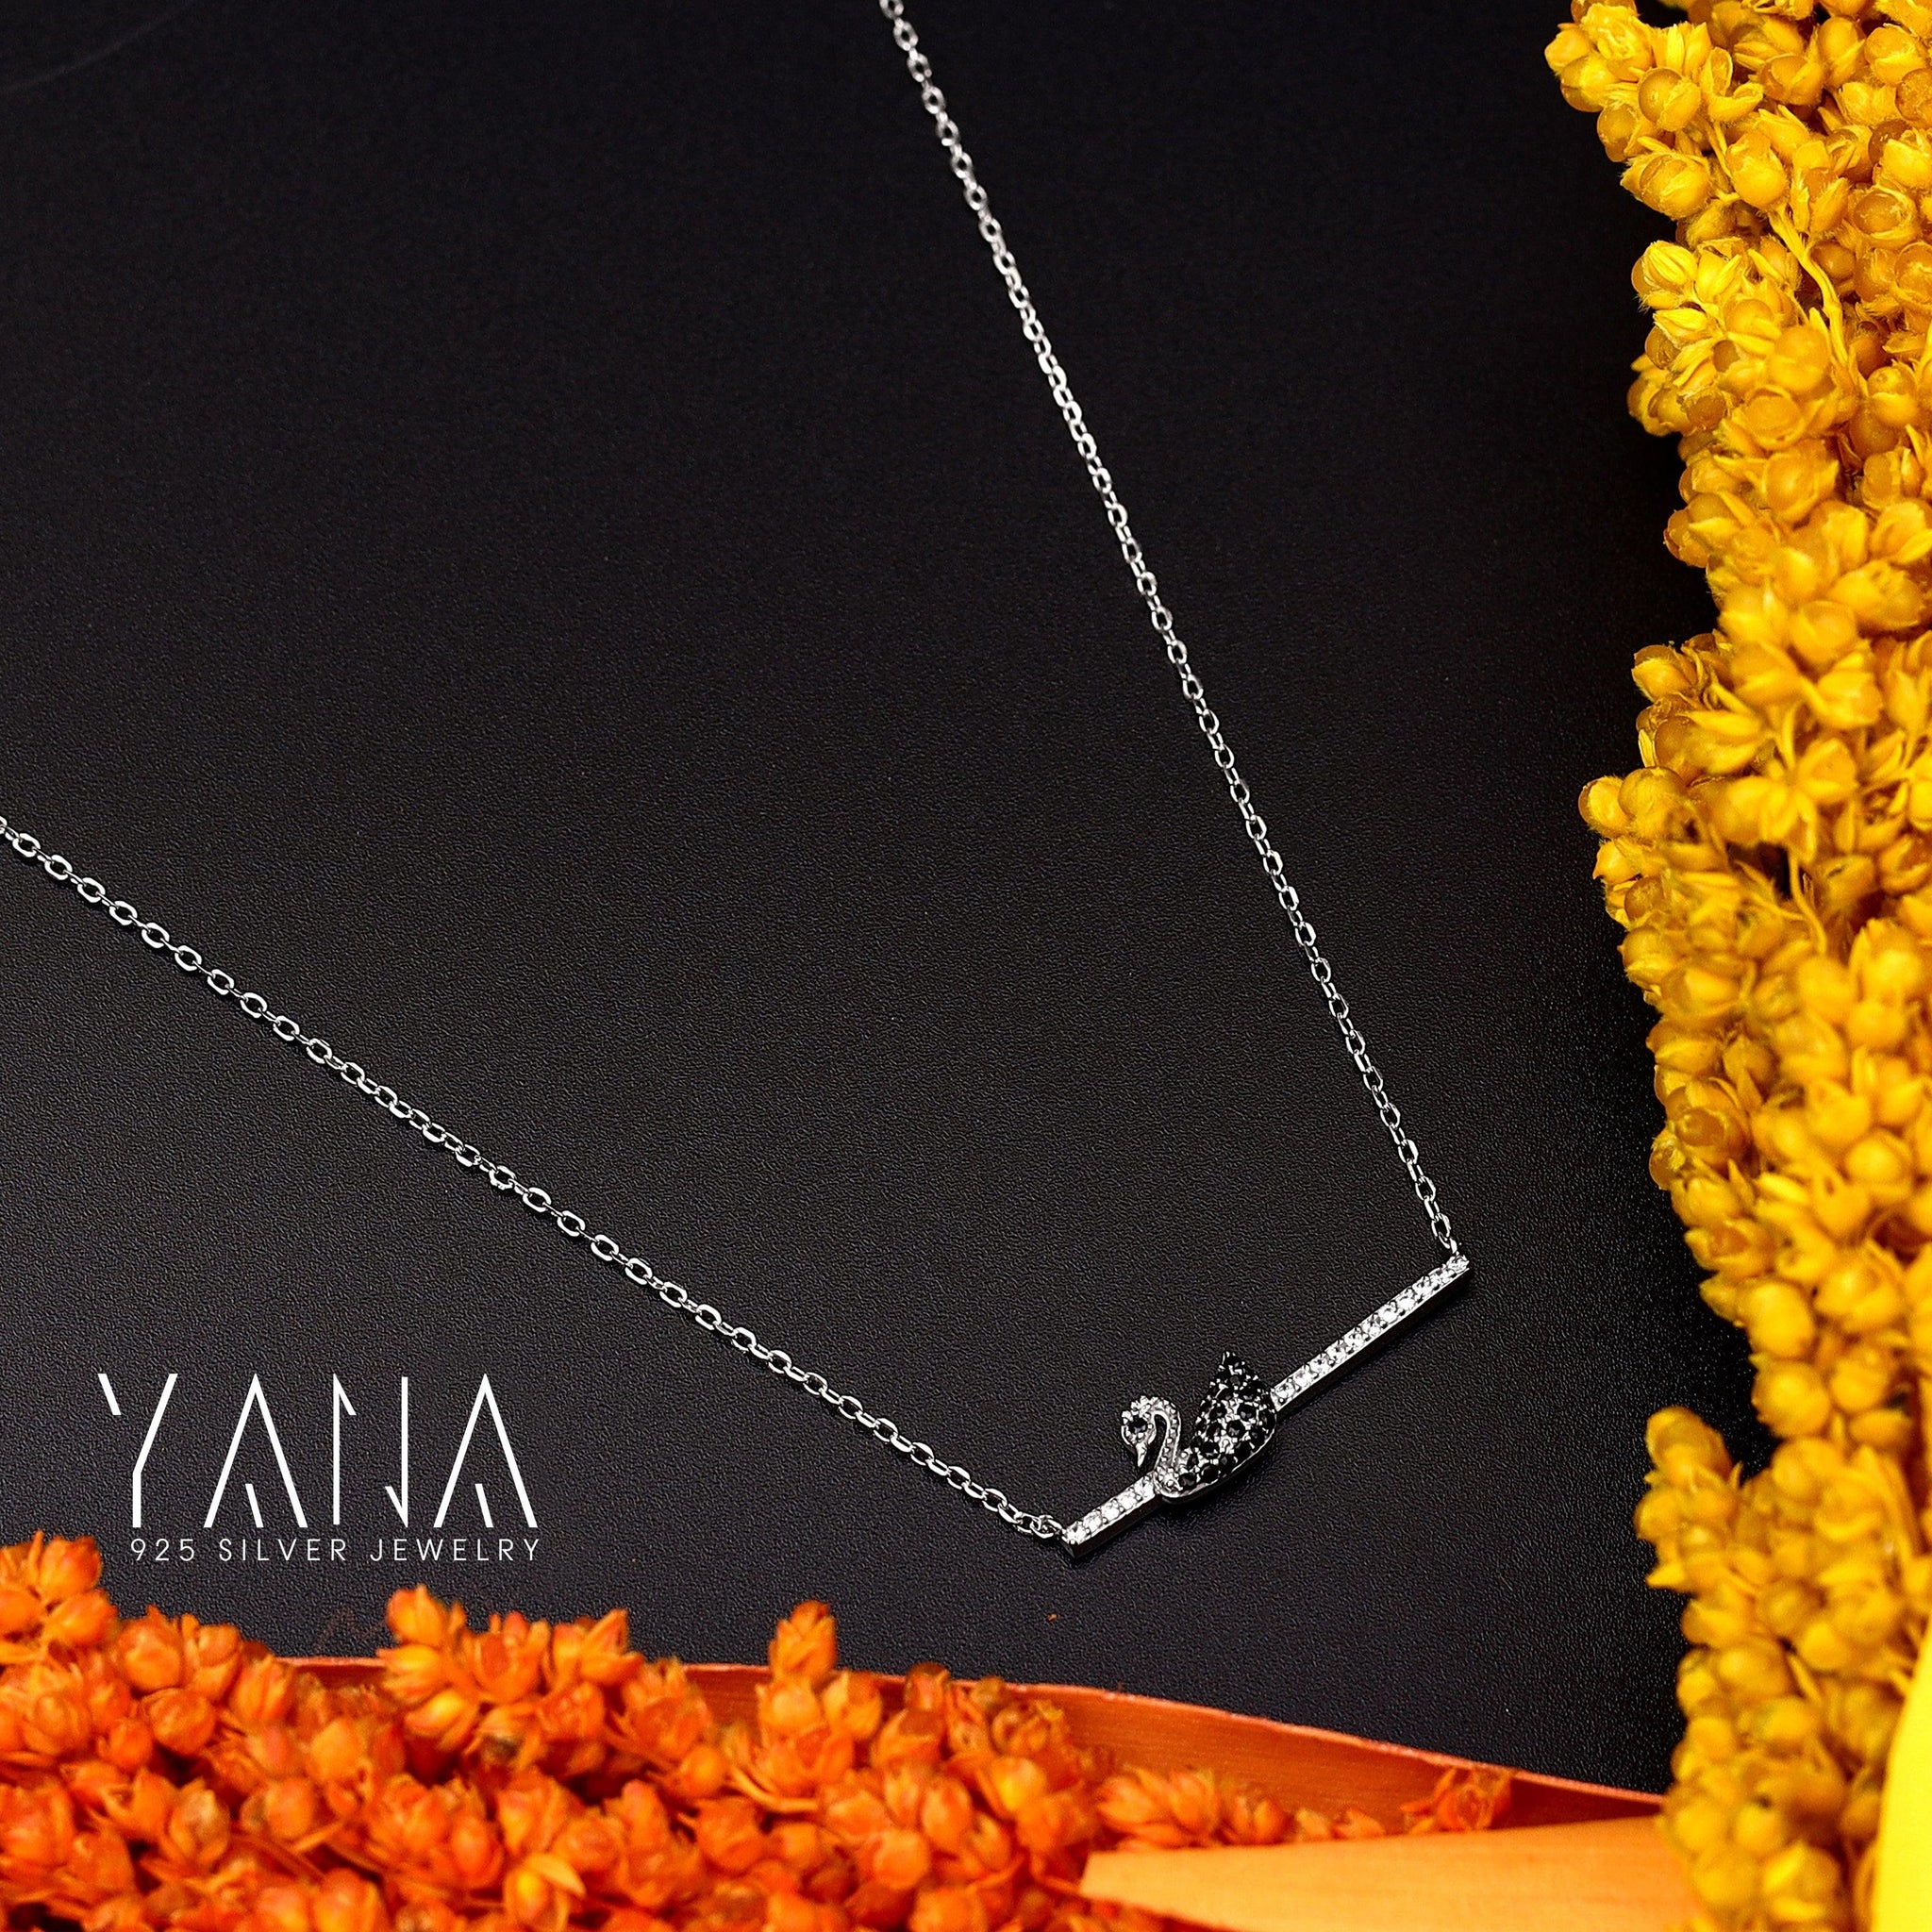 Swan necklace in 925 Silver For Women - YANA SILVER